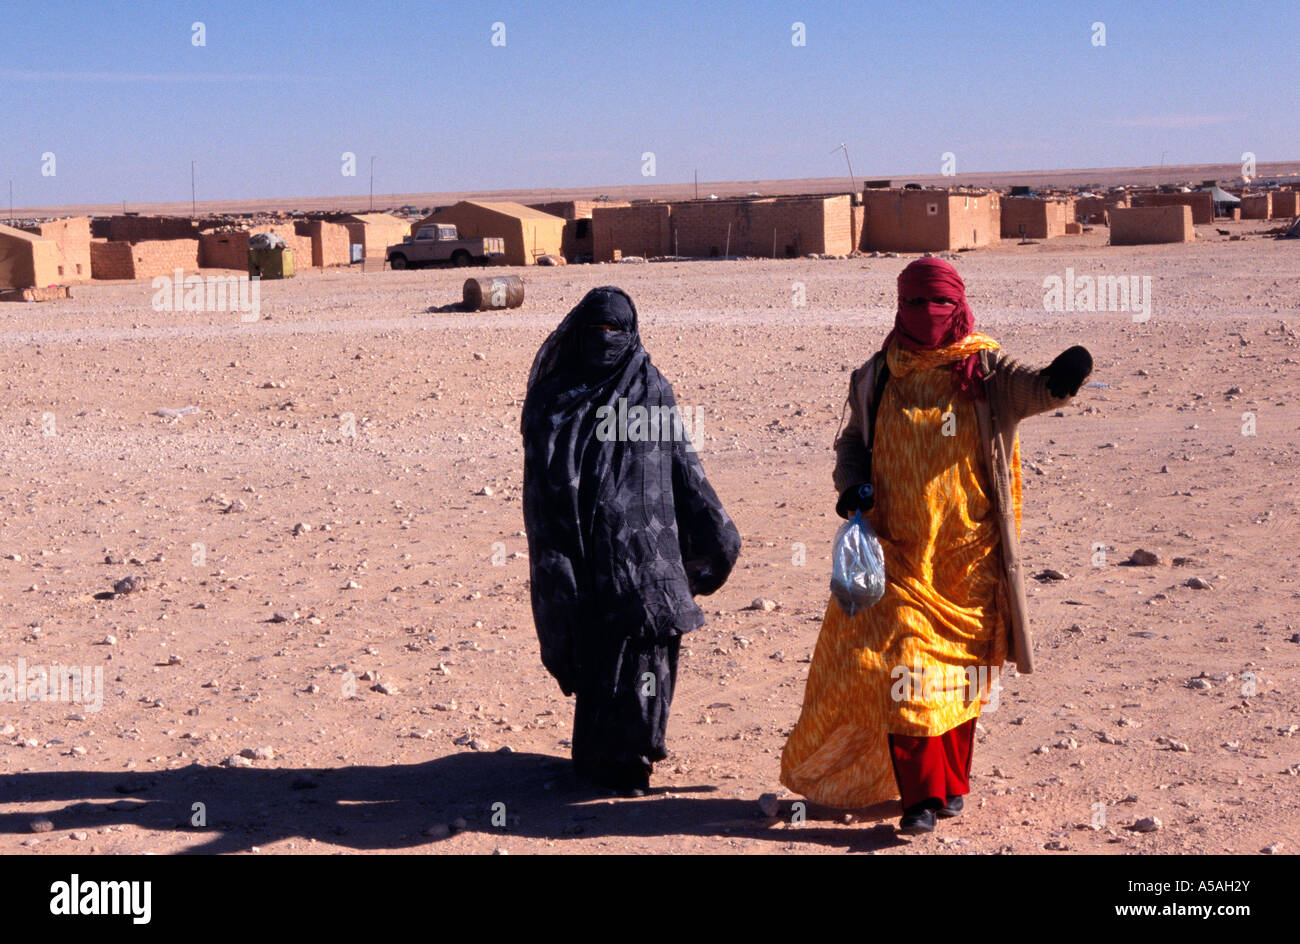 Les femmes sahraouies dans un camp de réfugiés de Tindouf en Algérie de l'Ouest Banque D'Images